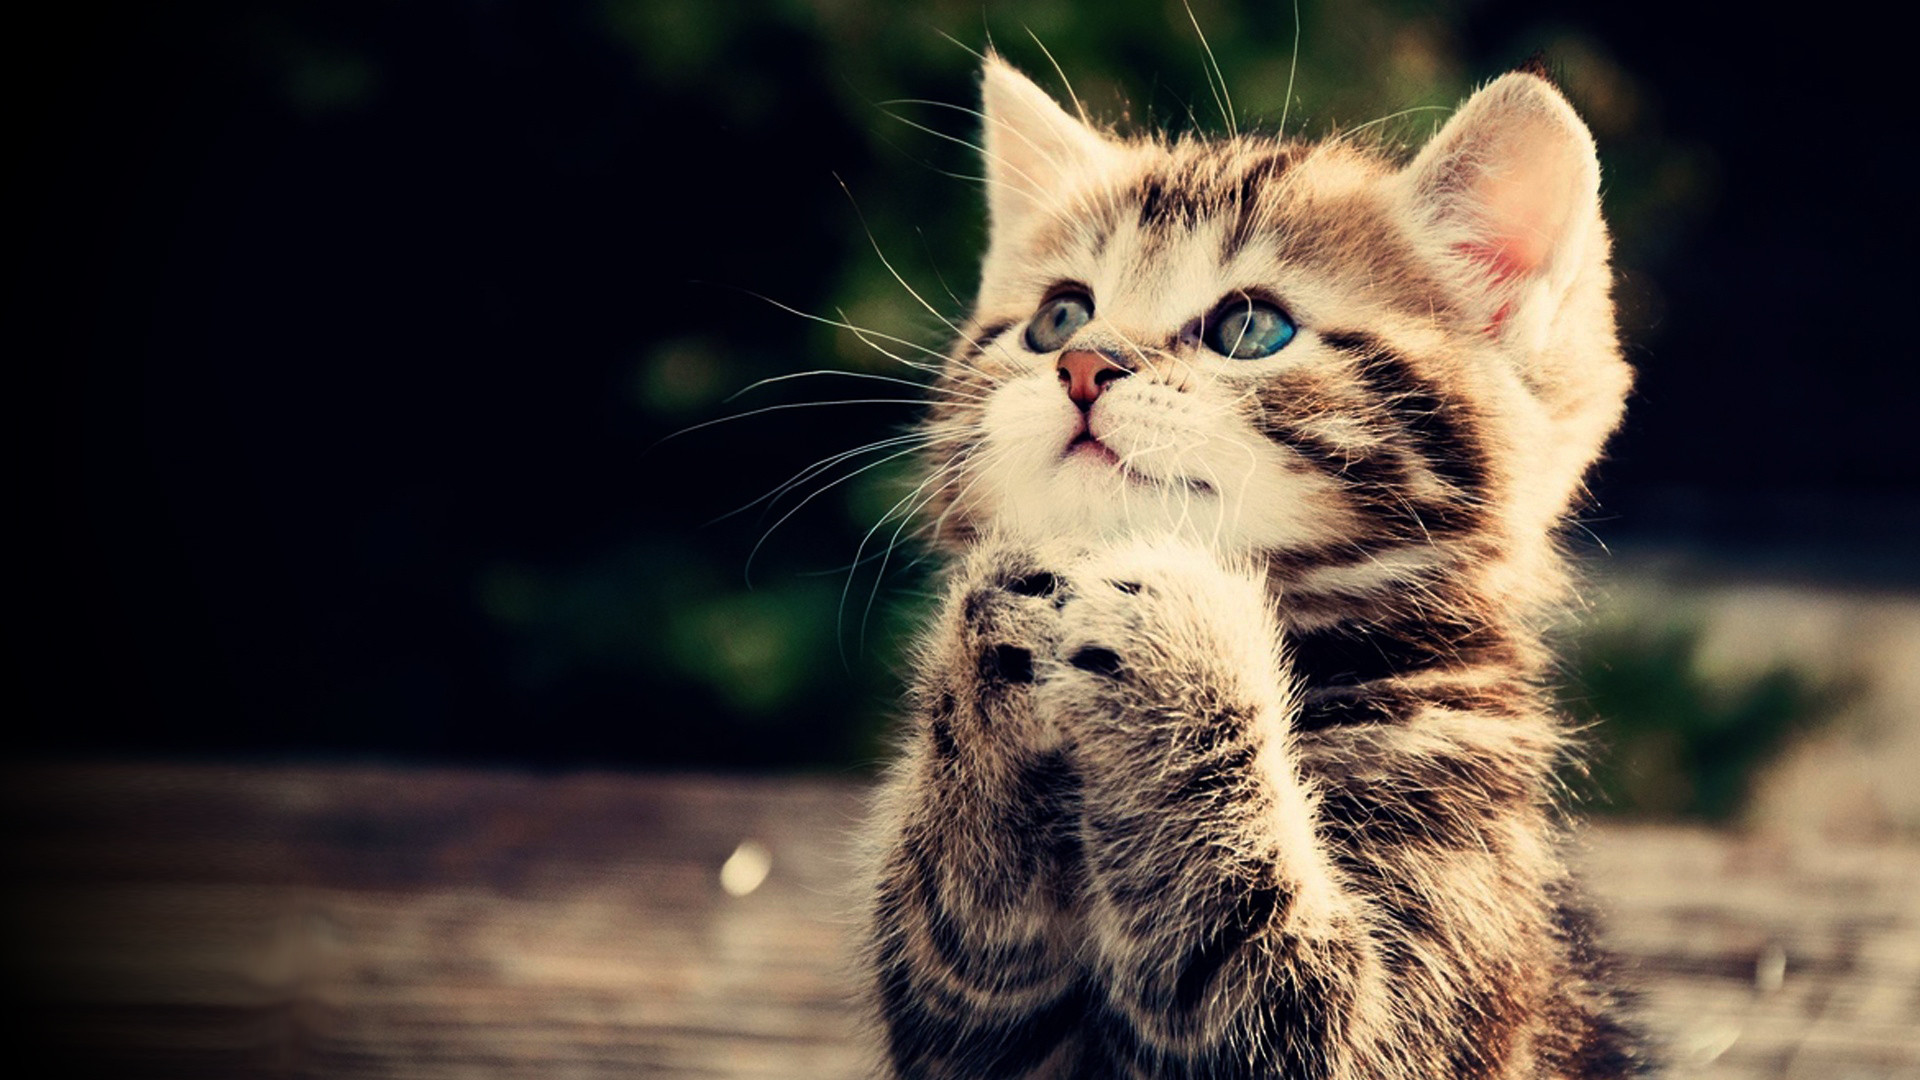 1920x1080 Praying kitten Full HD wallpaper, cute animal picture, 1080p, download